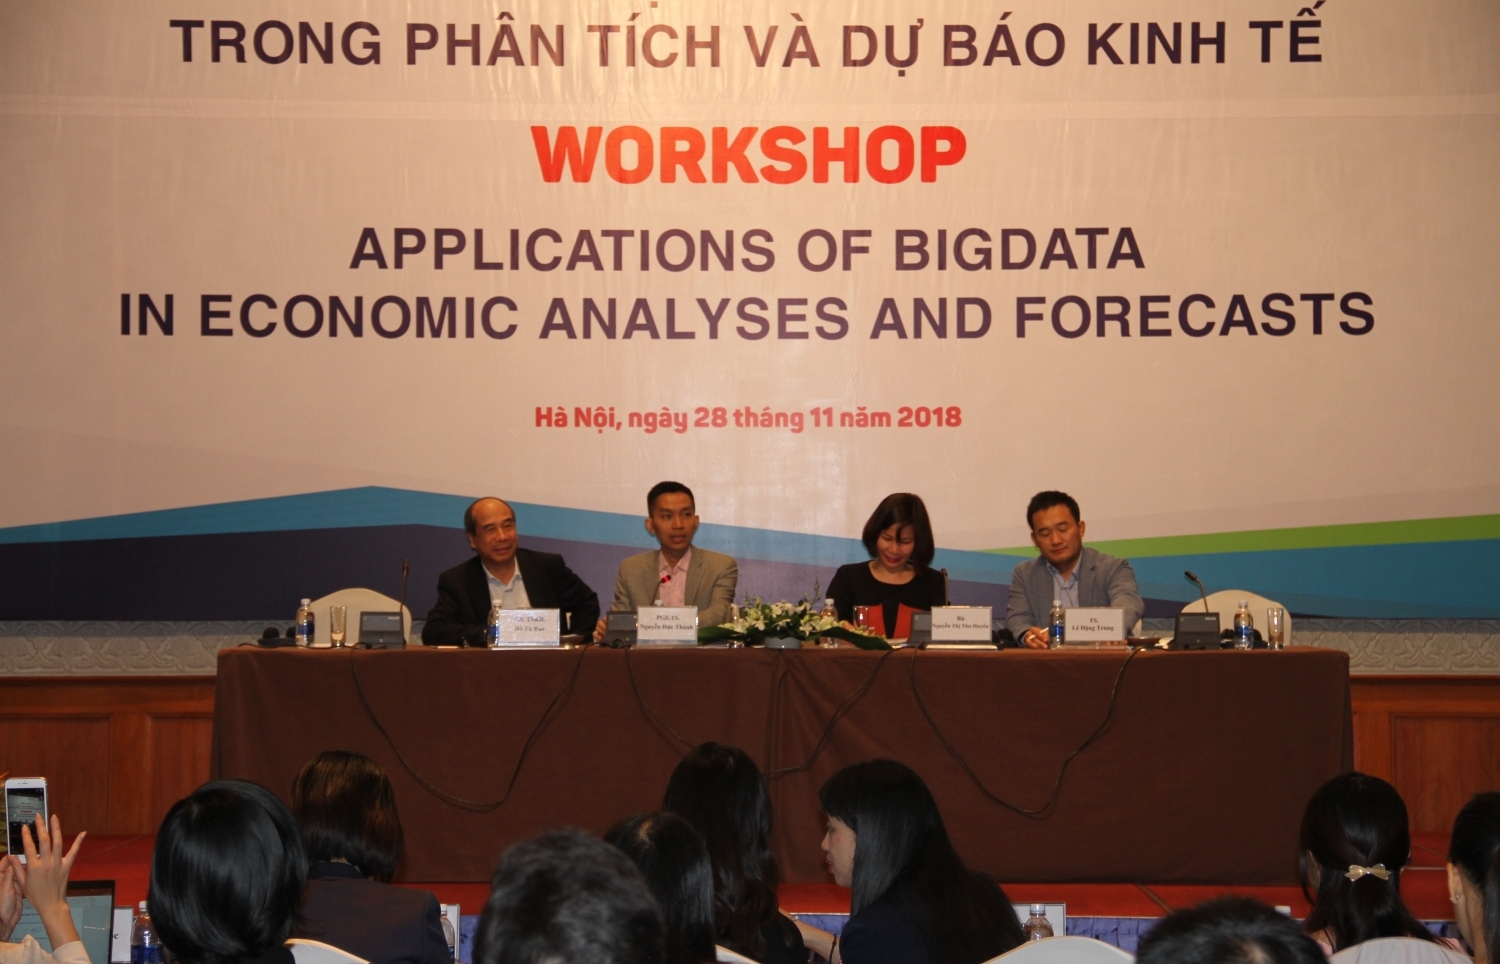 Ứng dụng Big Data đầu tiên trong phân tích và dự báo kinh tế tại Việt Nam